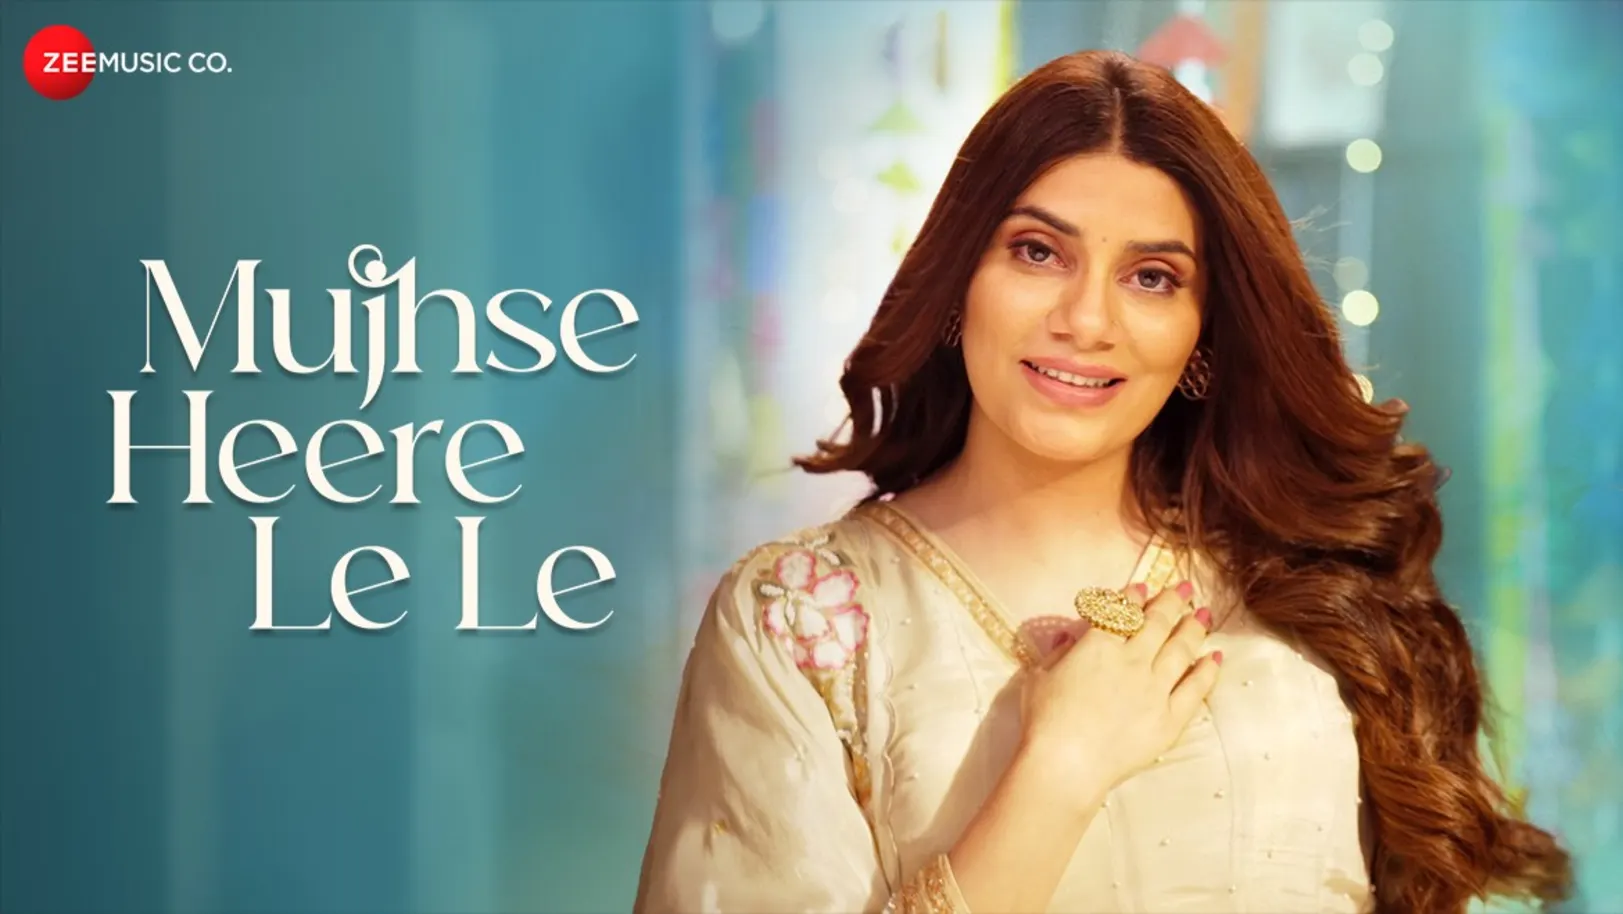 Mujhse Heere Le Le - Full Video | Mannat Noor & Anu Malik 